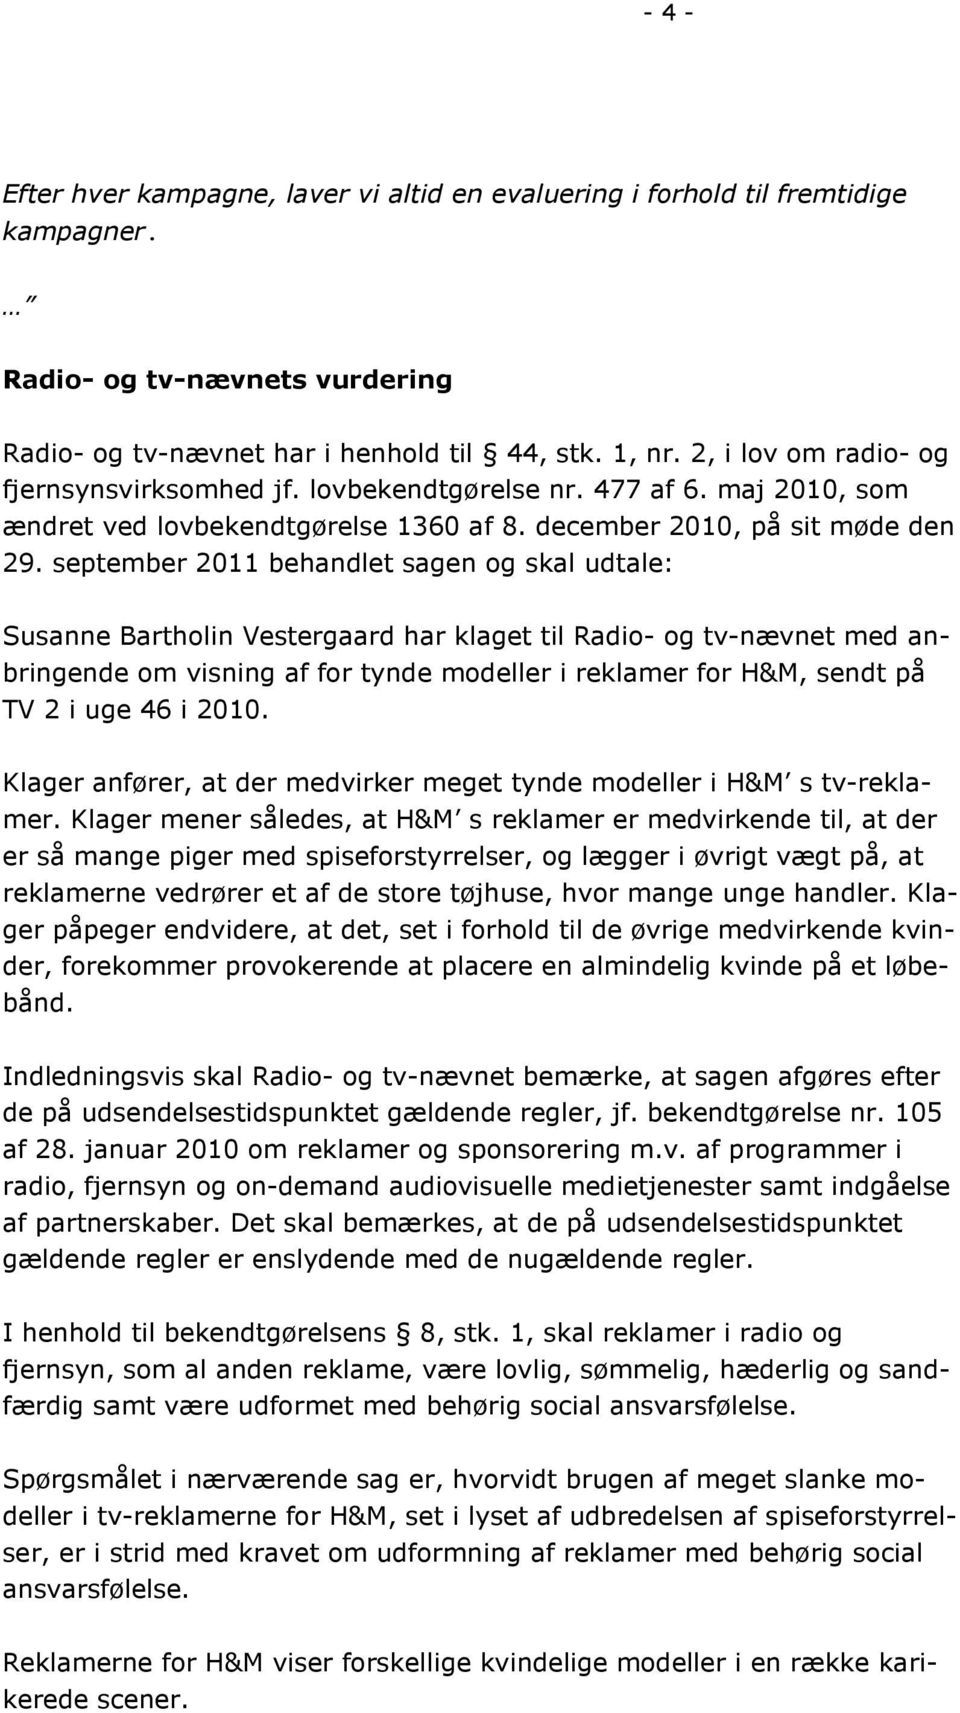 september 2011 behandlet sagen og skal udtale: Susanne Bartholin Vestergaard har klaget til Radio- og tv-nævnet med anbringende om visning af for tynde modeller i reklamer for H&M, sendt på TV 2 i